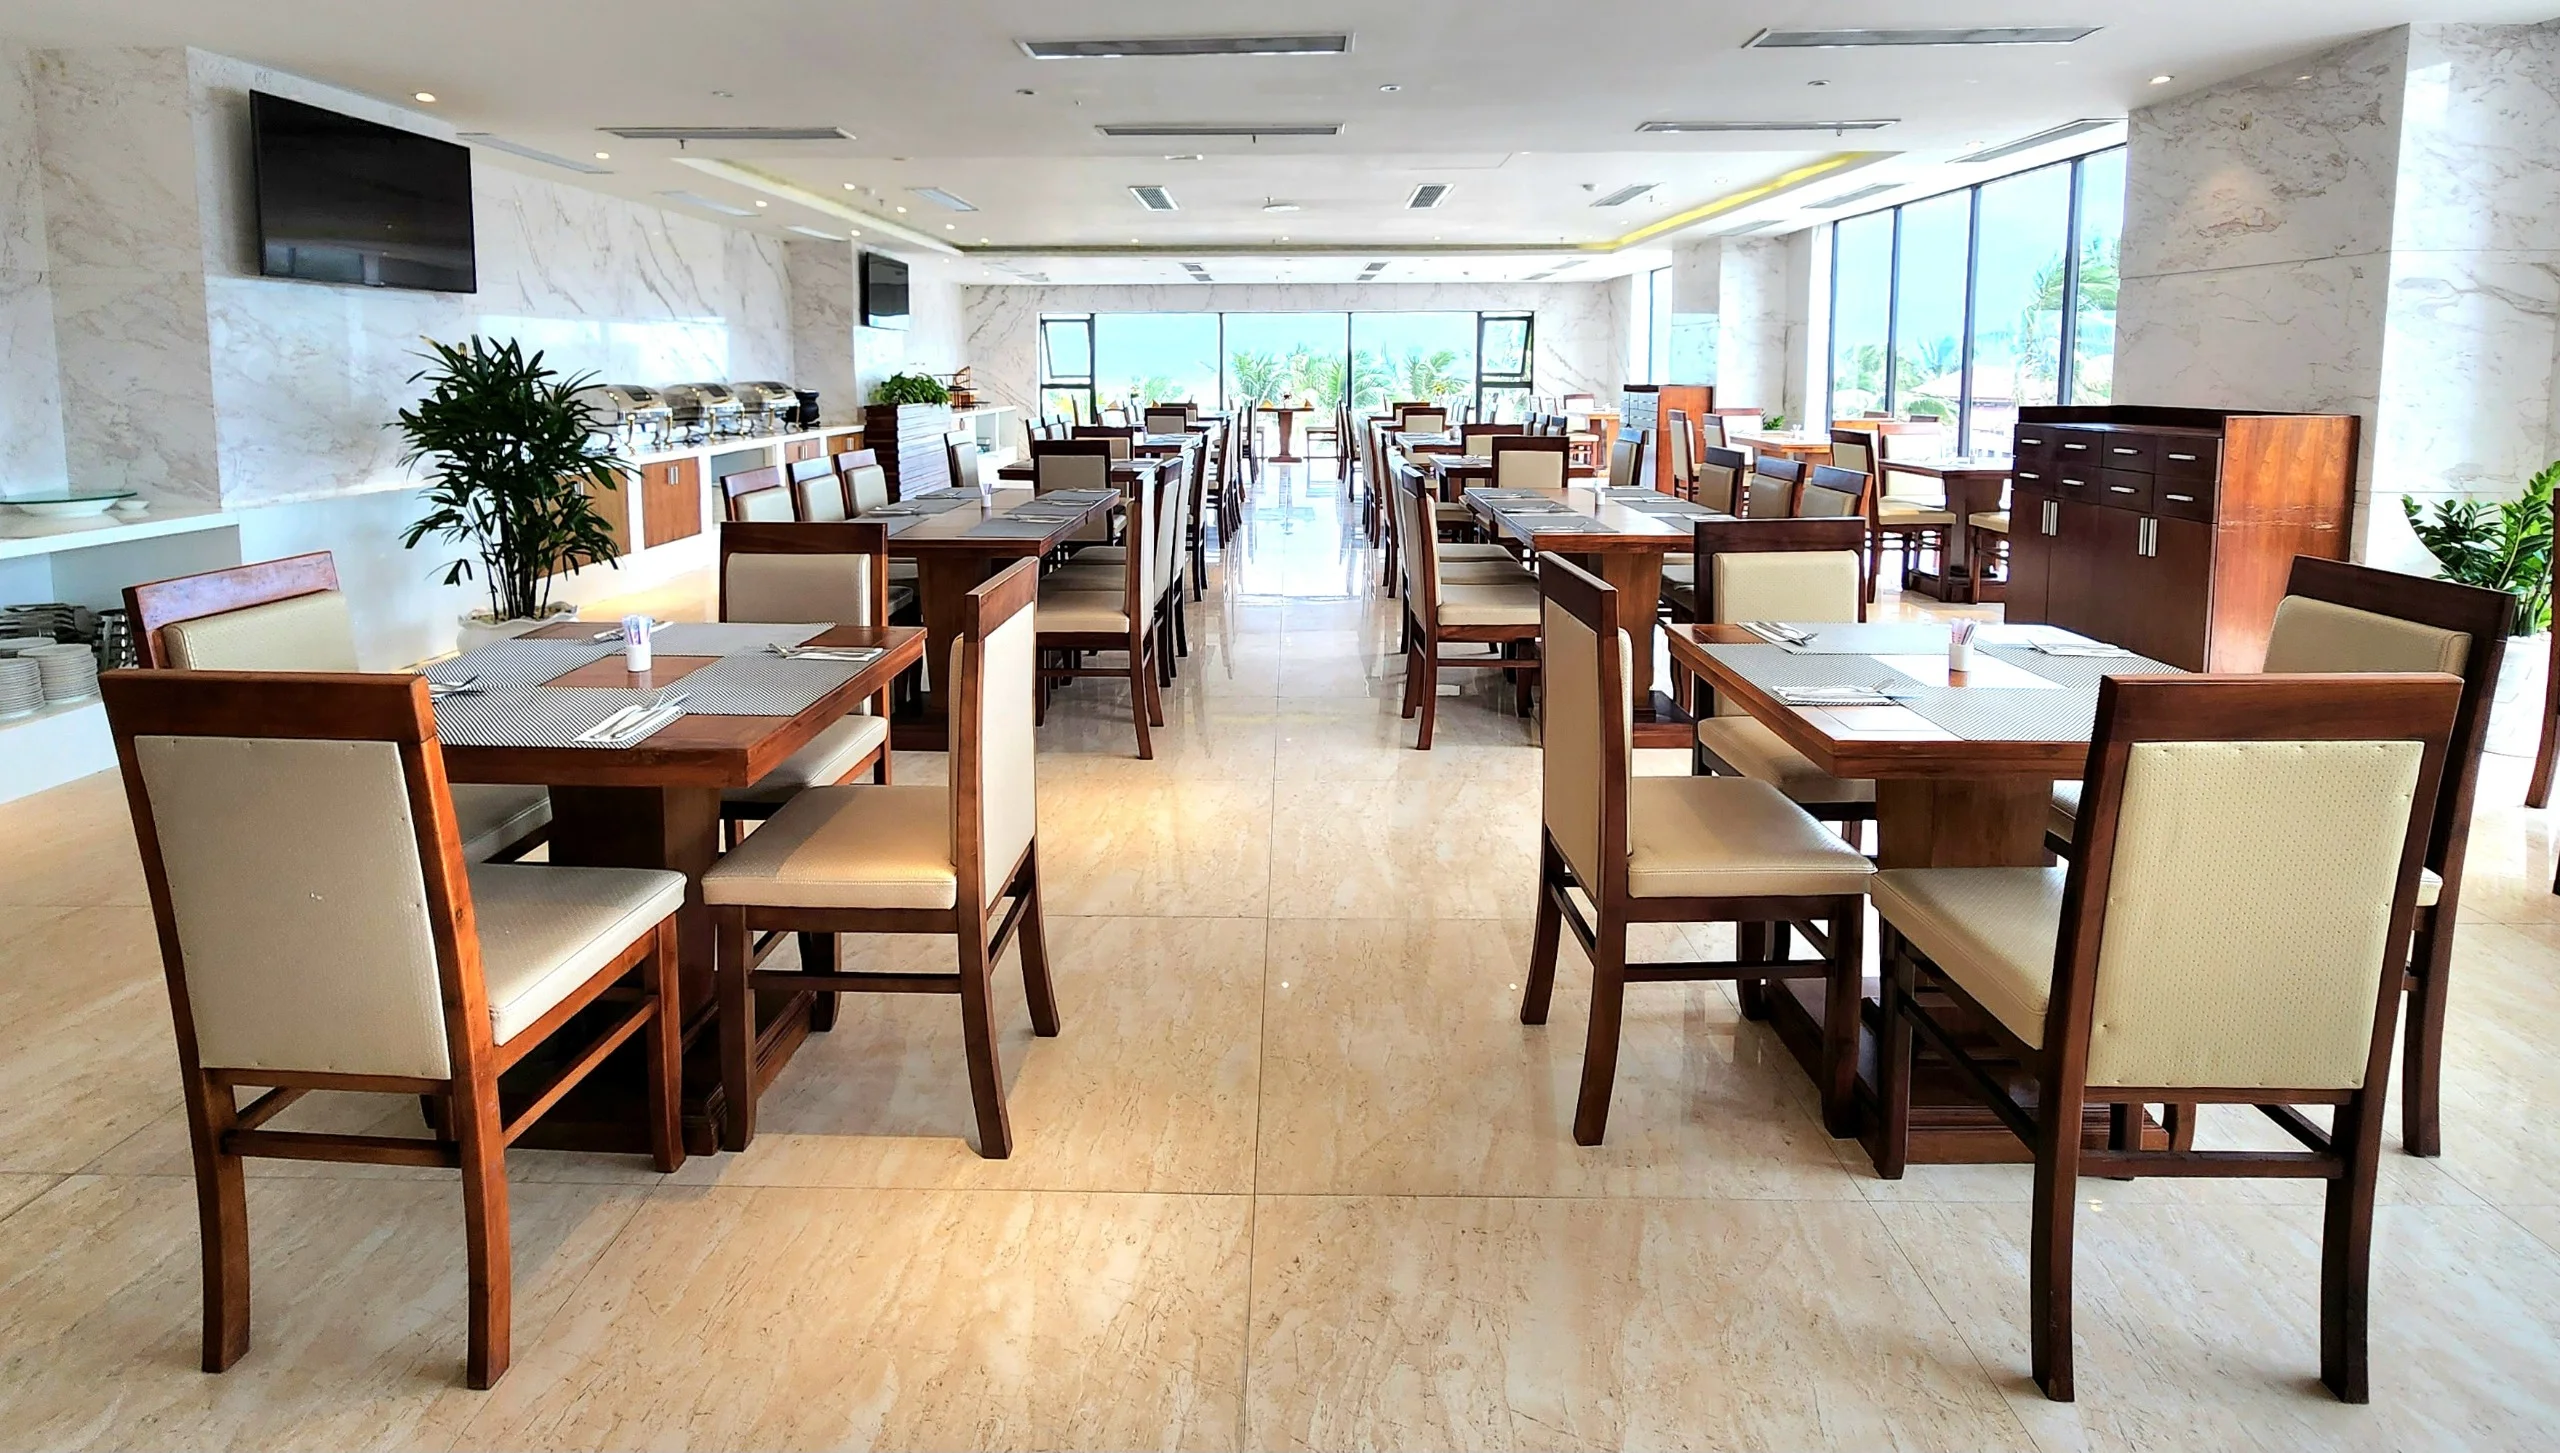 Khách sạn Yarra Ocean Suites Đà Nẵng